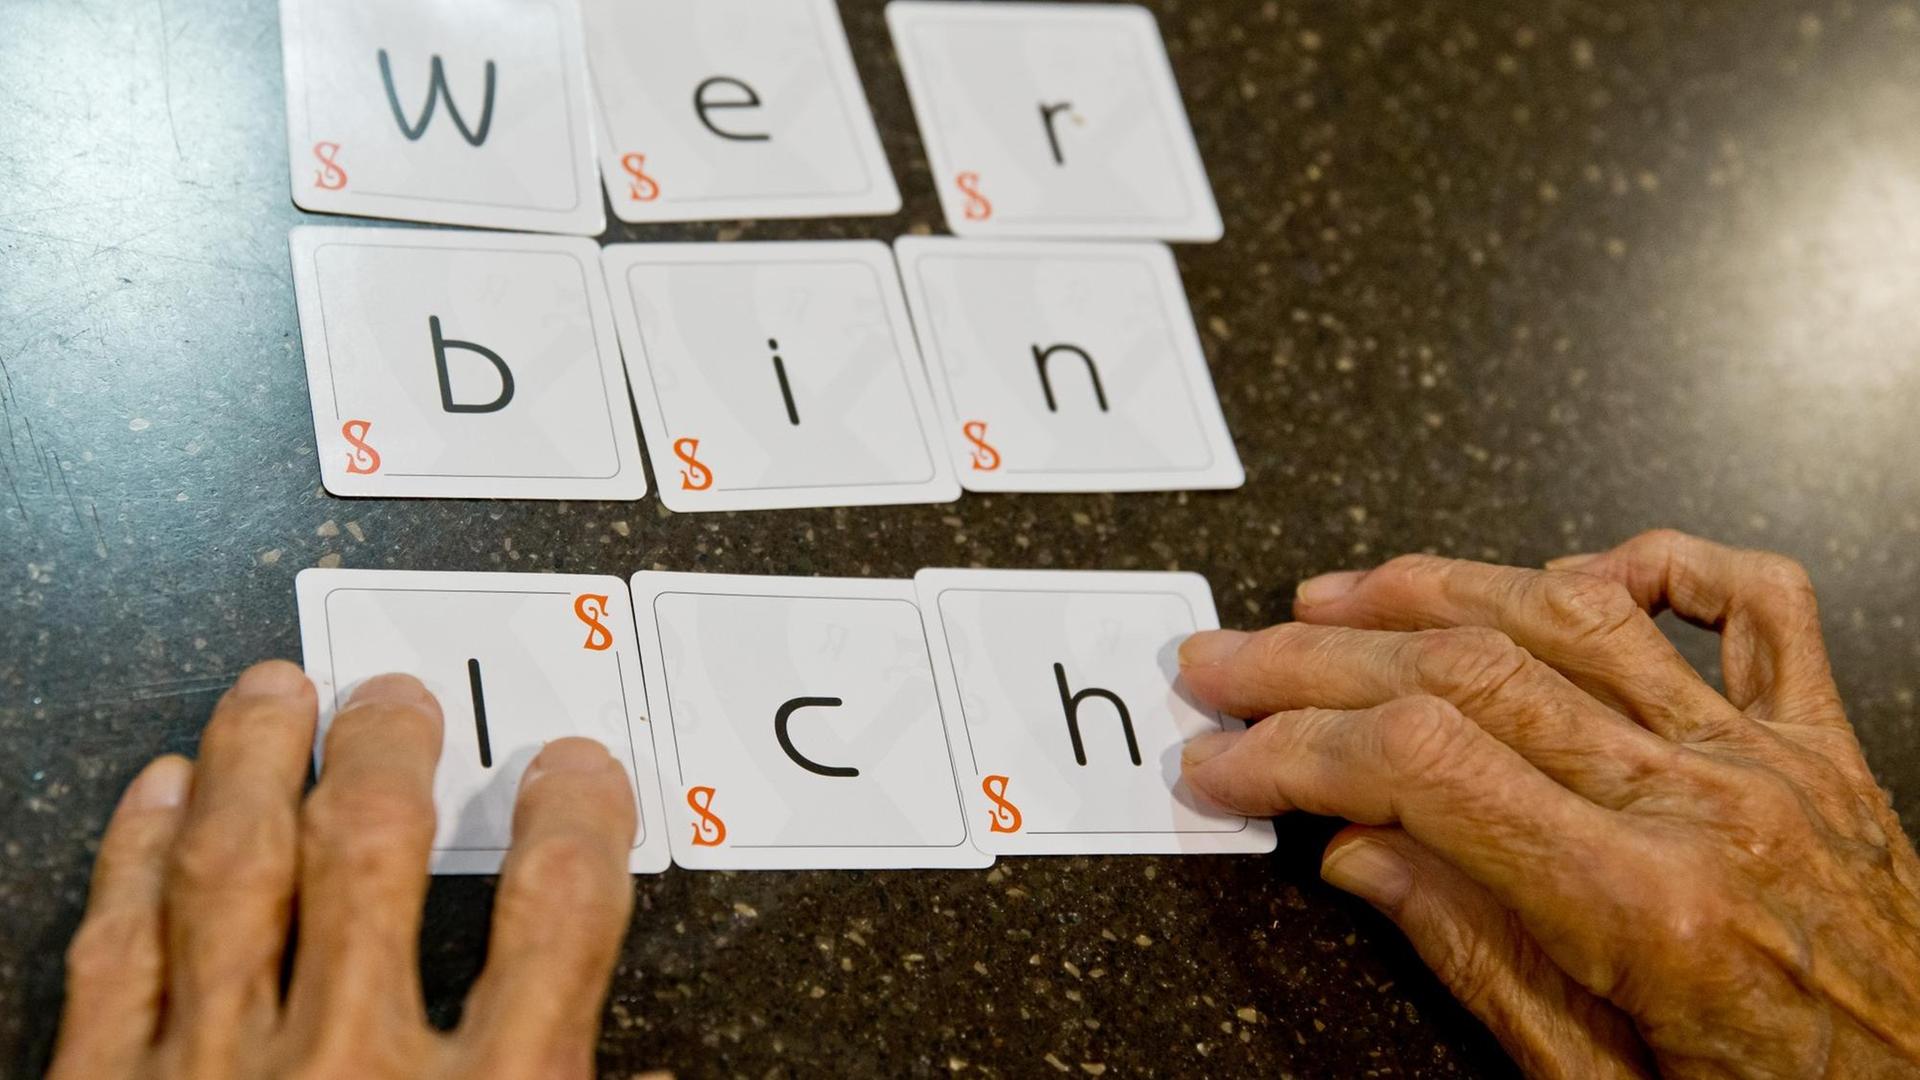 Zwei Hände legen die Karten eines Spiels zu dem Satz "wer bin ich" zusammen.